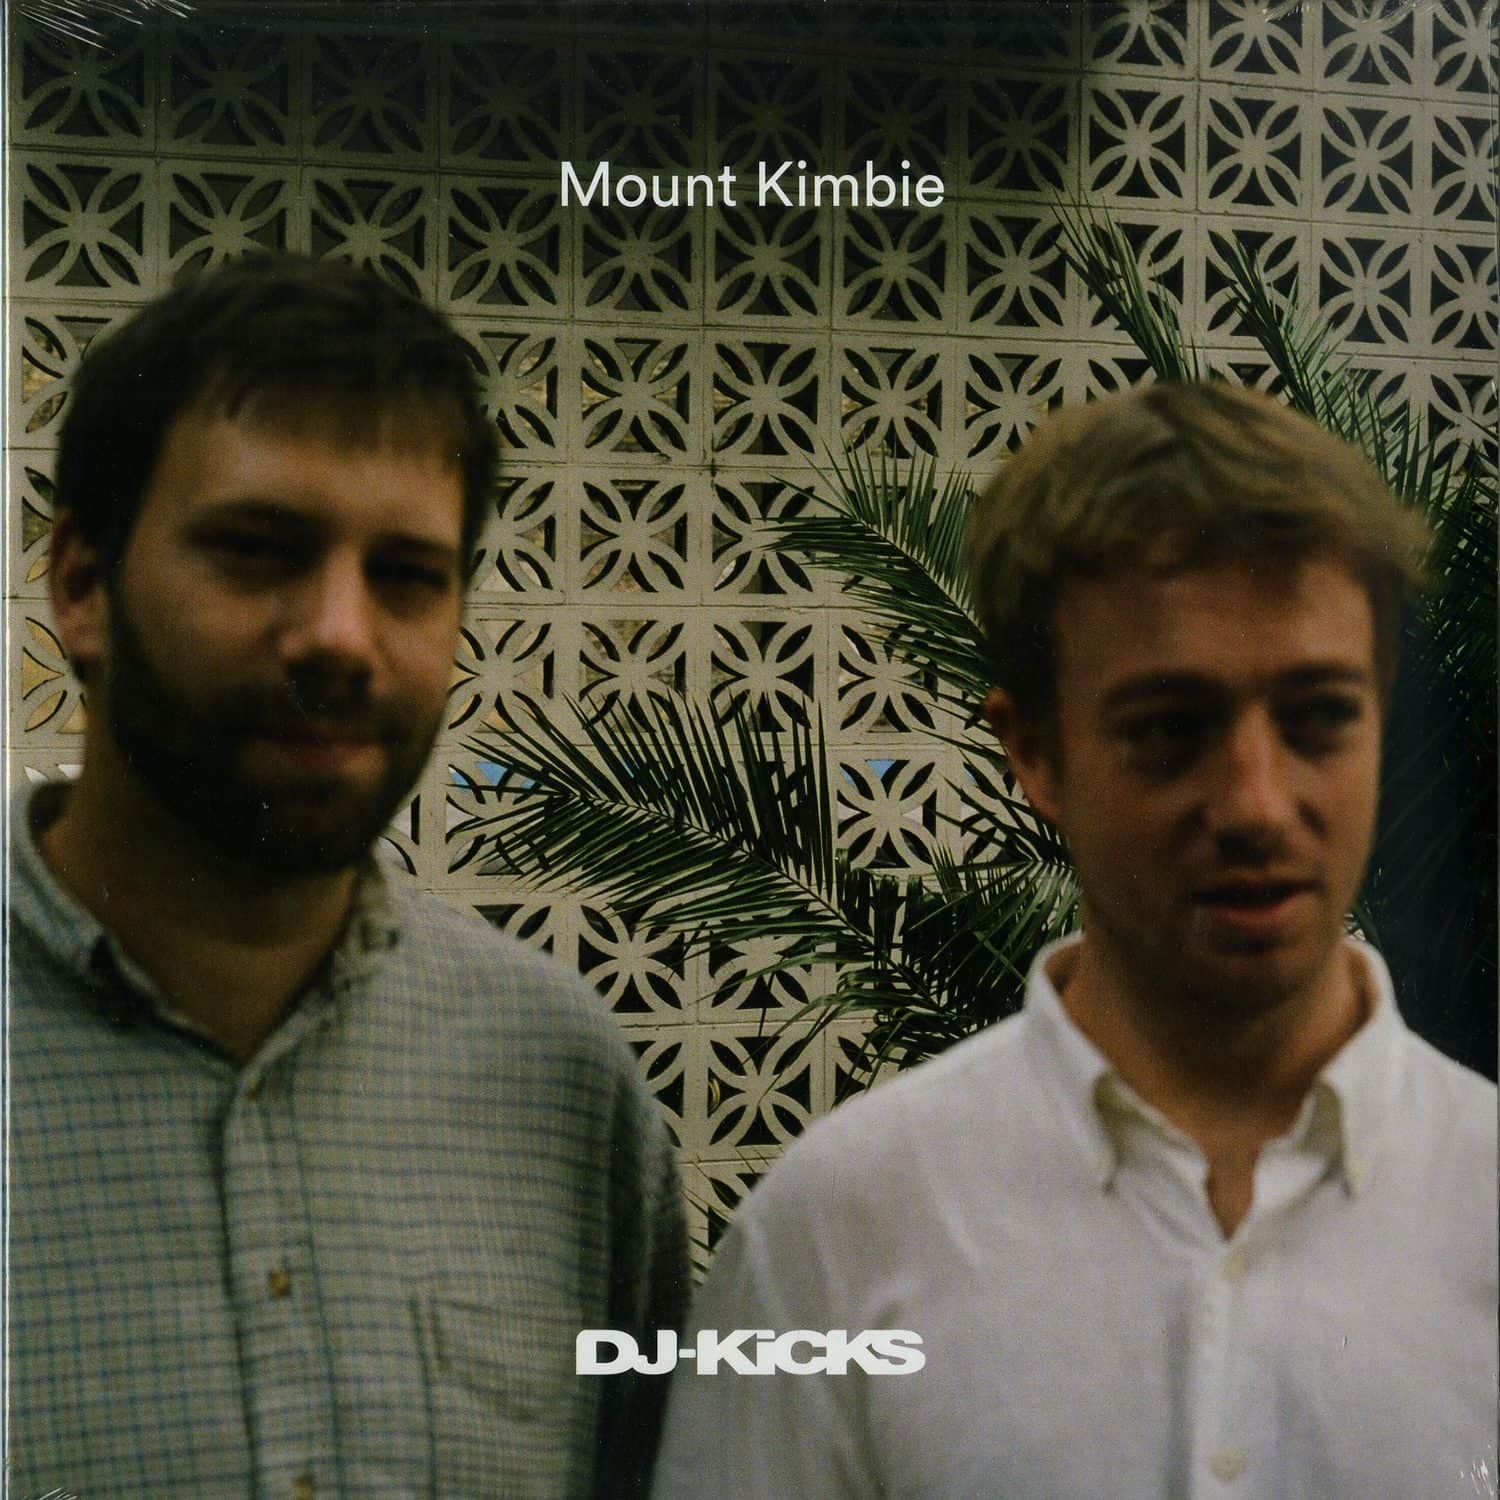 Mount Kimbie - DJ-KICKS 